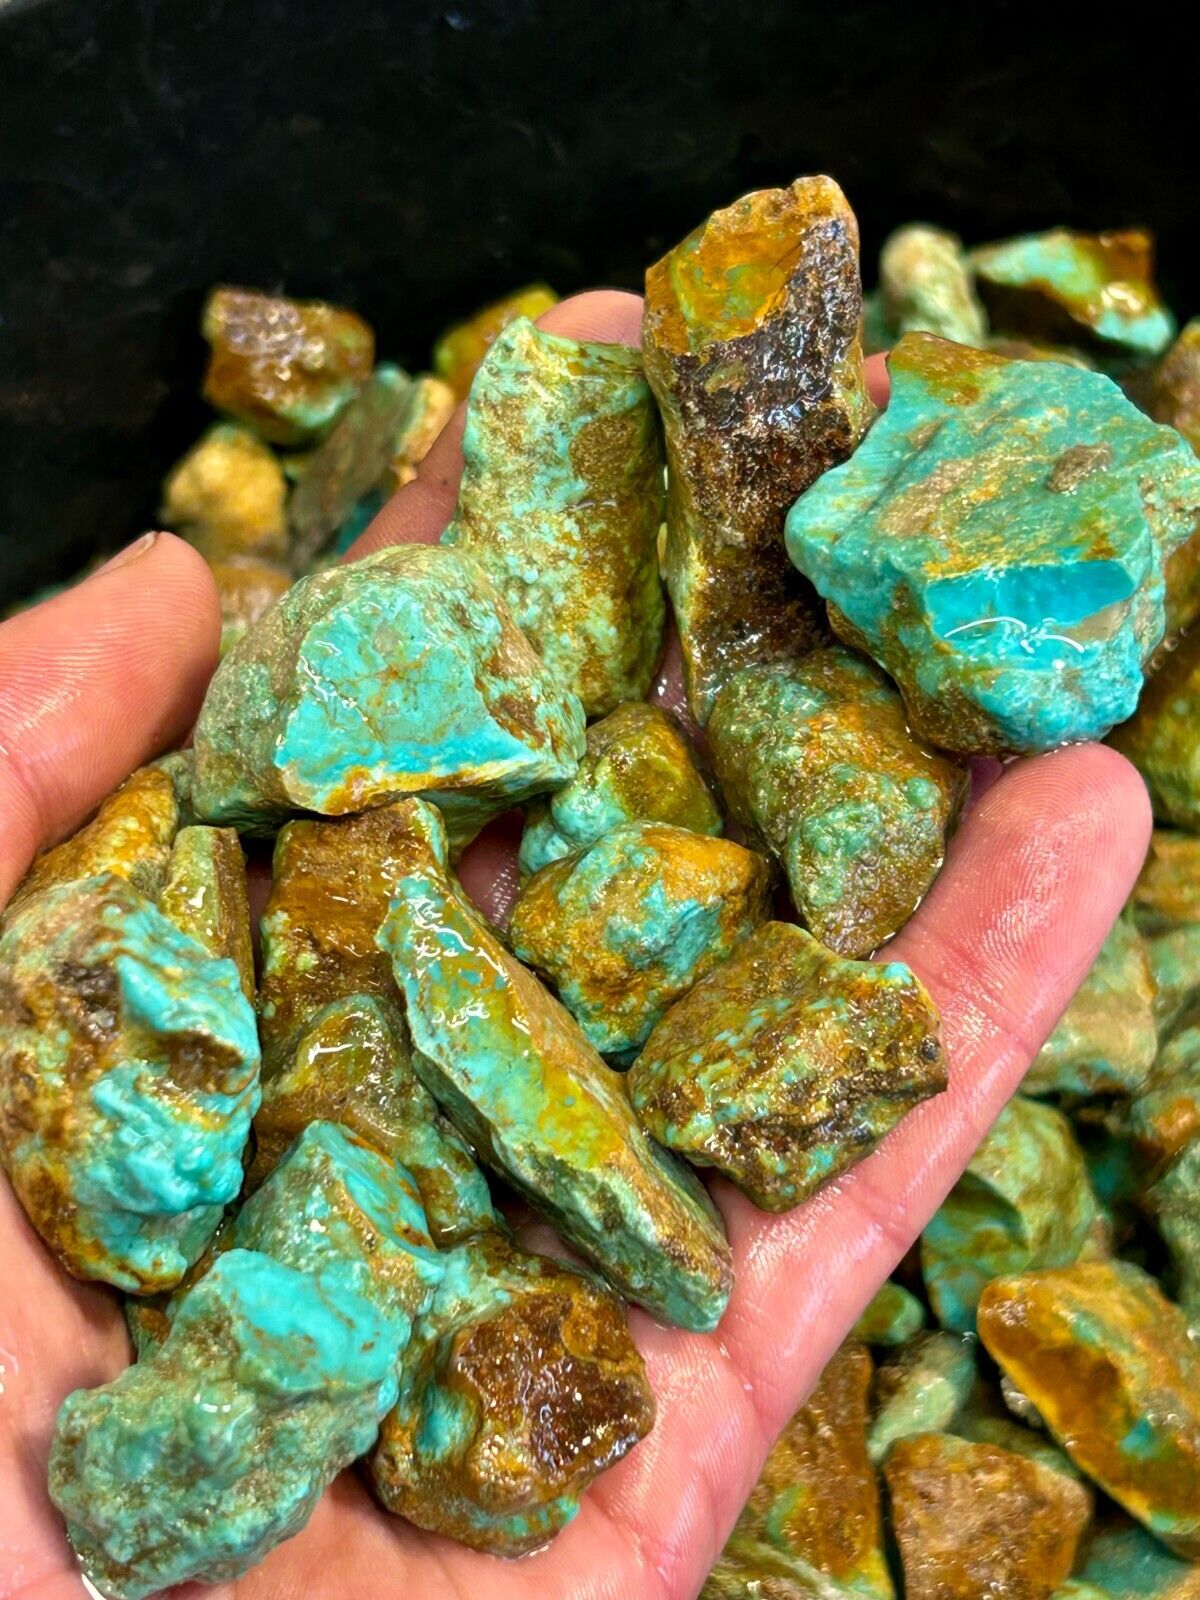 New Treasure Hunt Sample 1/3 LB of Arizona Turquoise Nugs #1 Seller's Pick